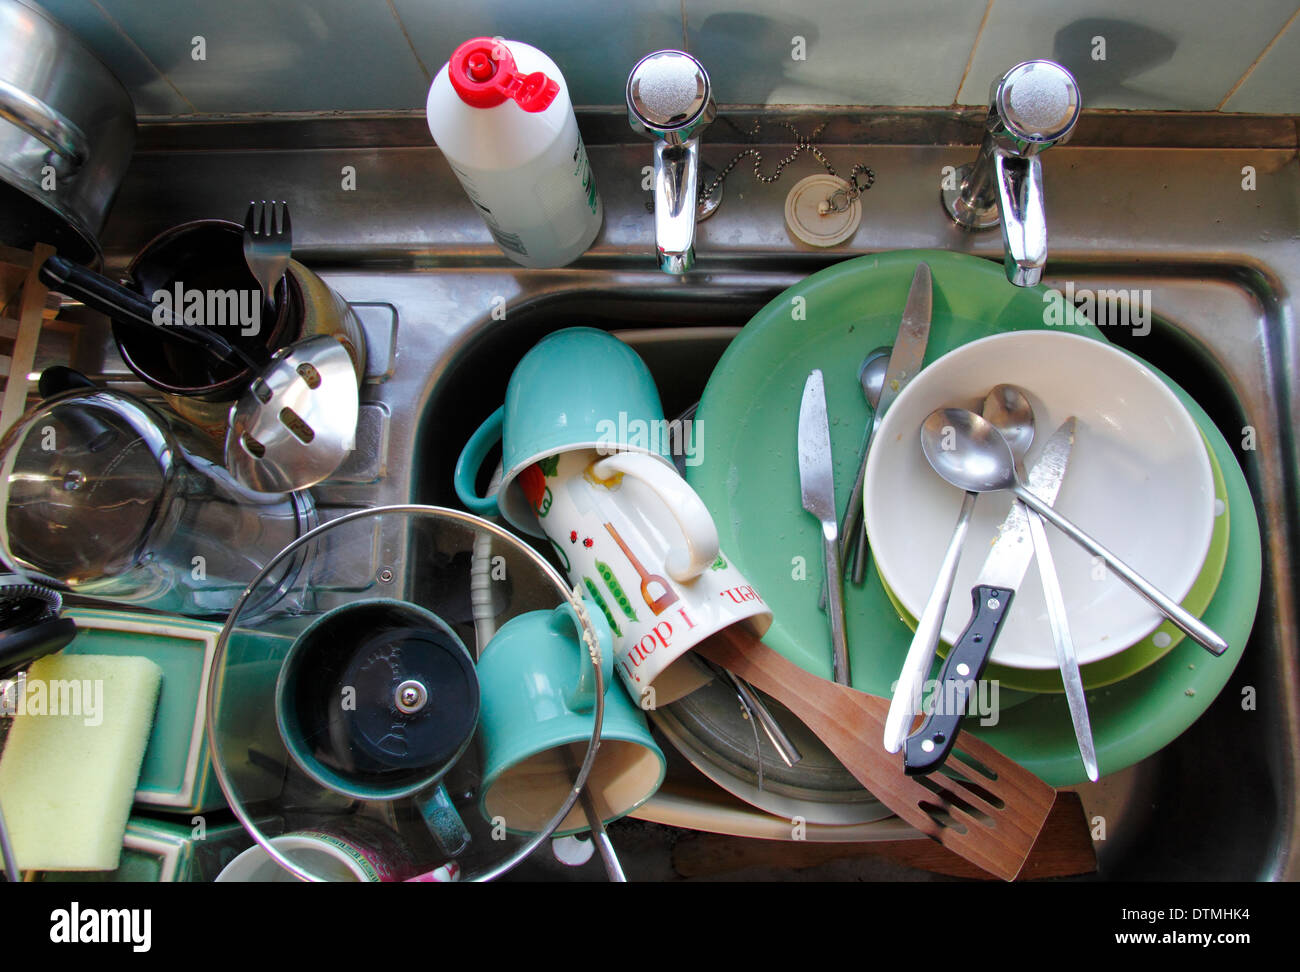 Lavandino della cucina accatastato con pentole sporche, Inghilterra, Regno Unito Foto Stock